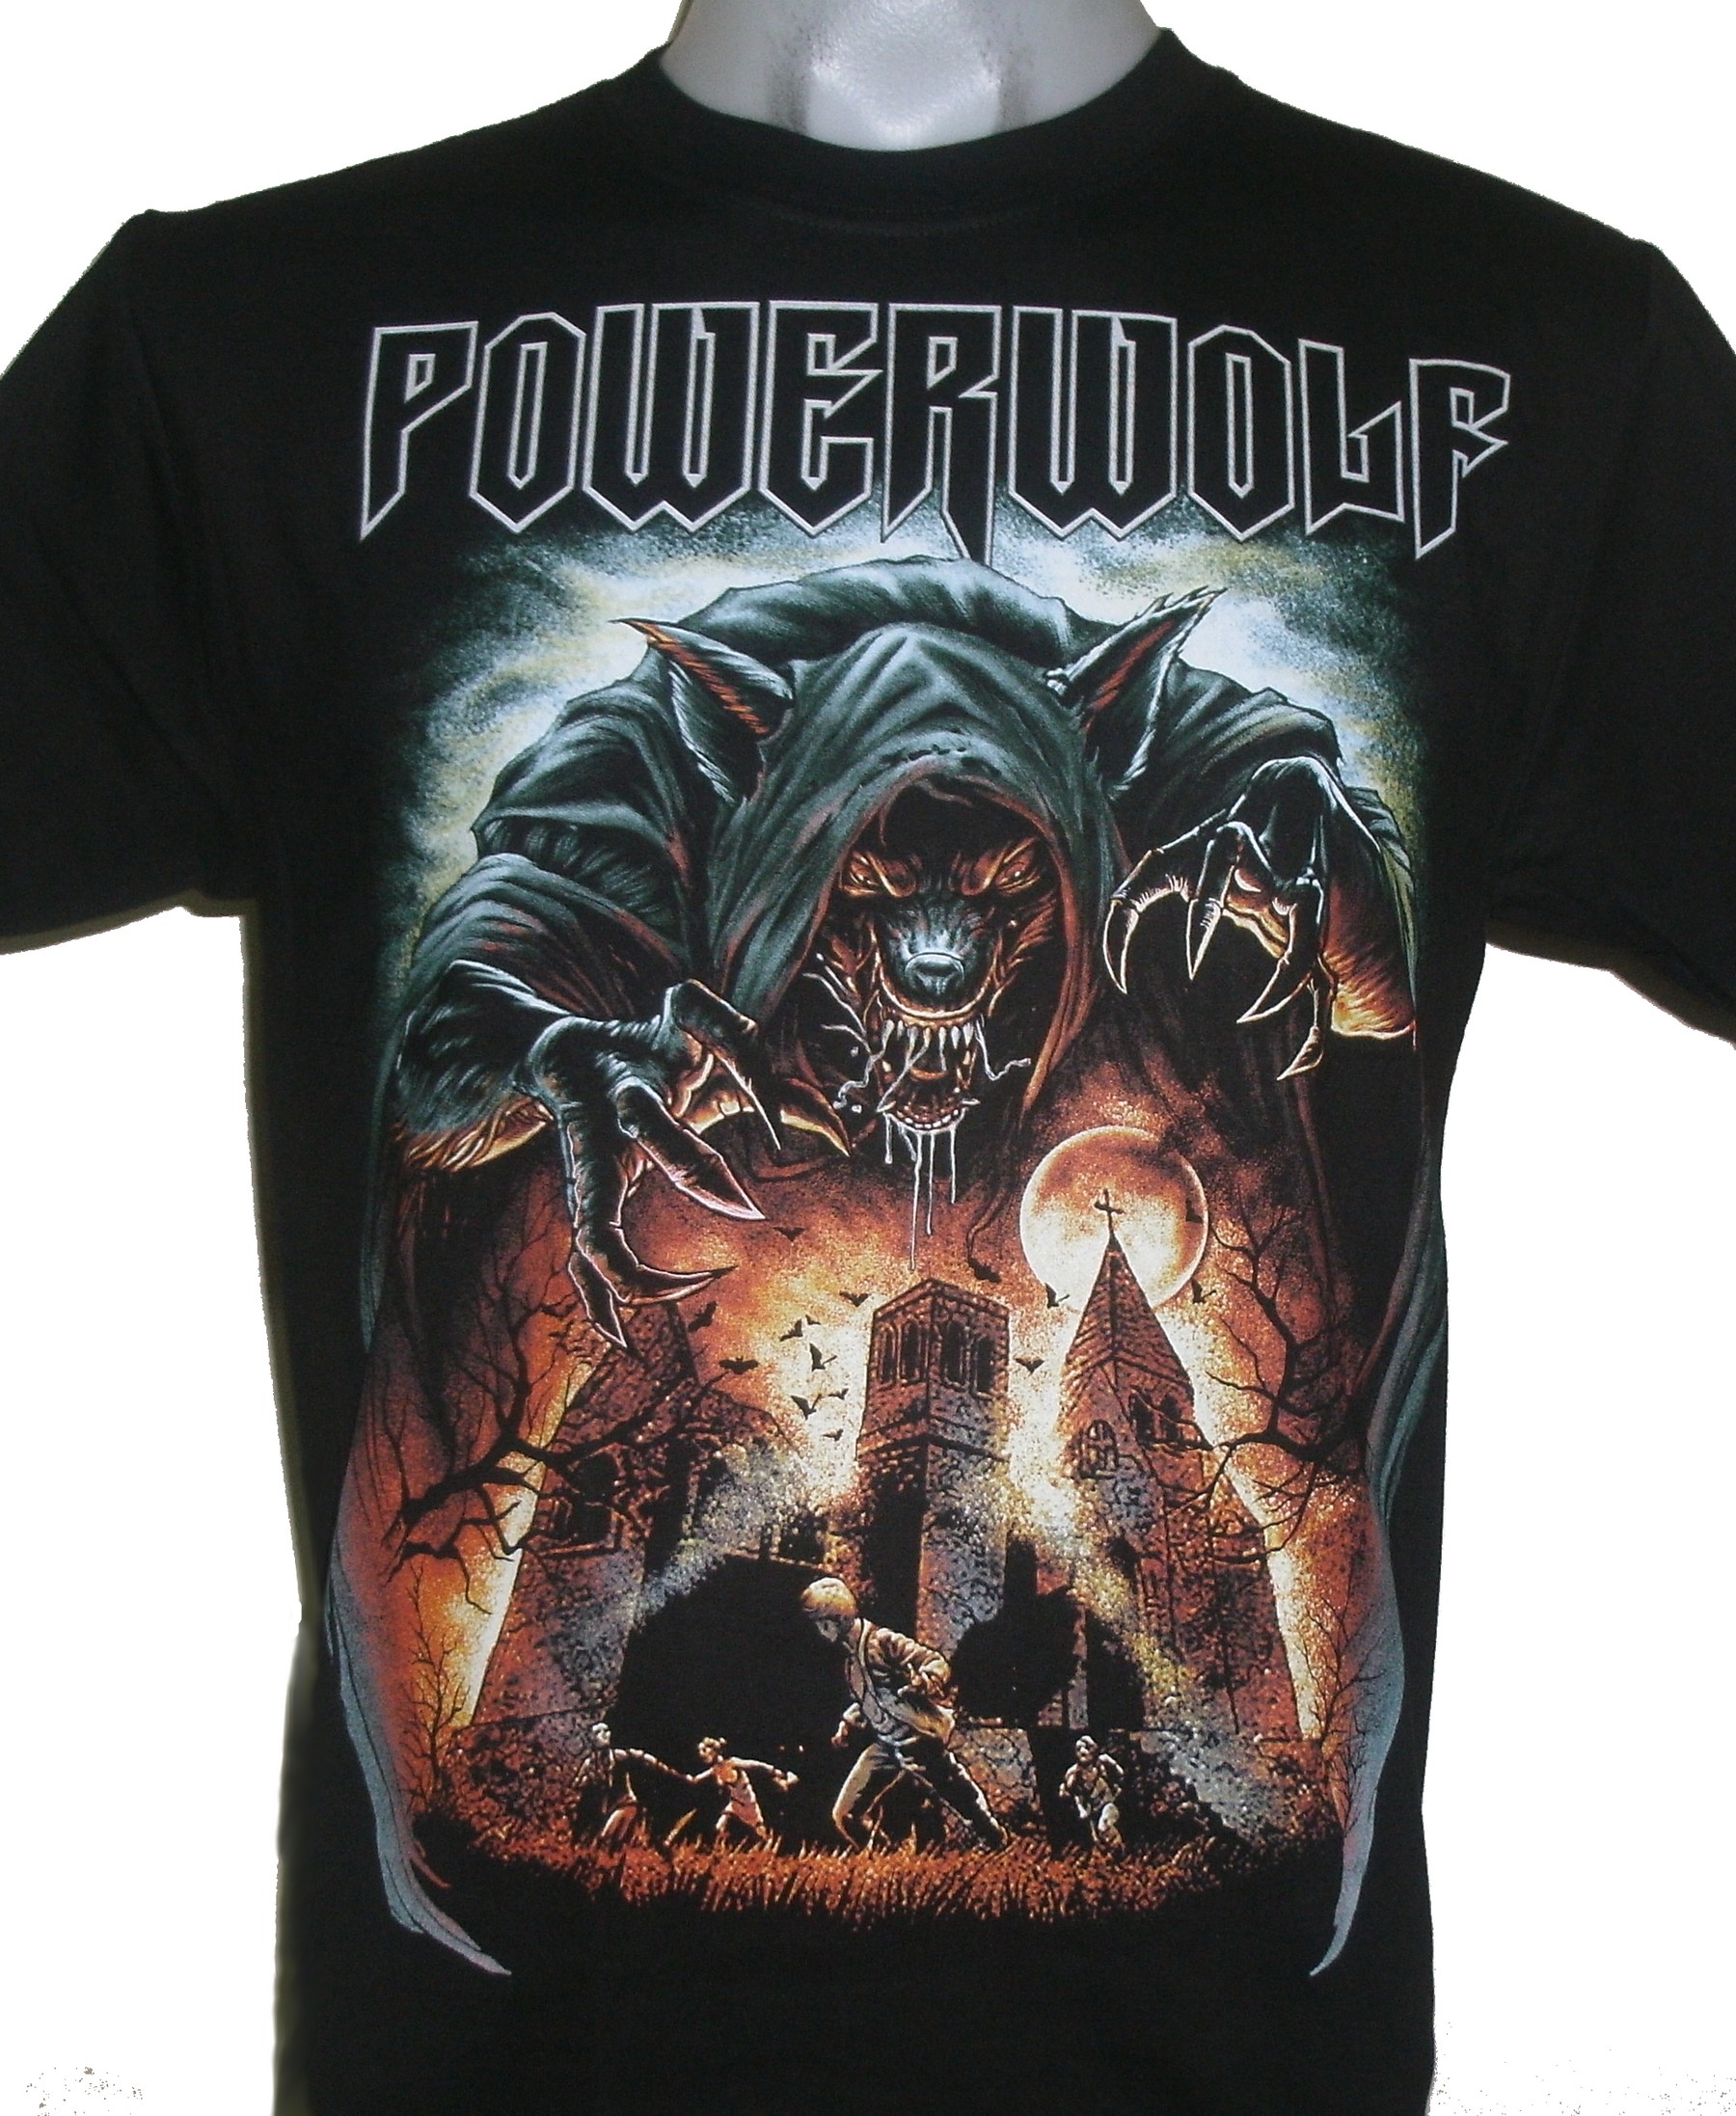 Powerwolf t-shirt size L